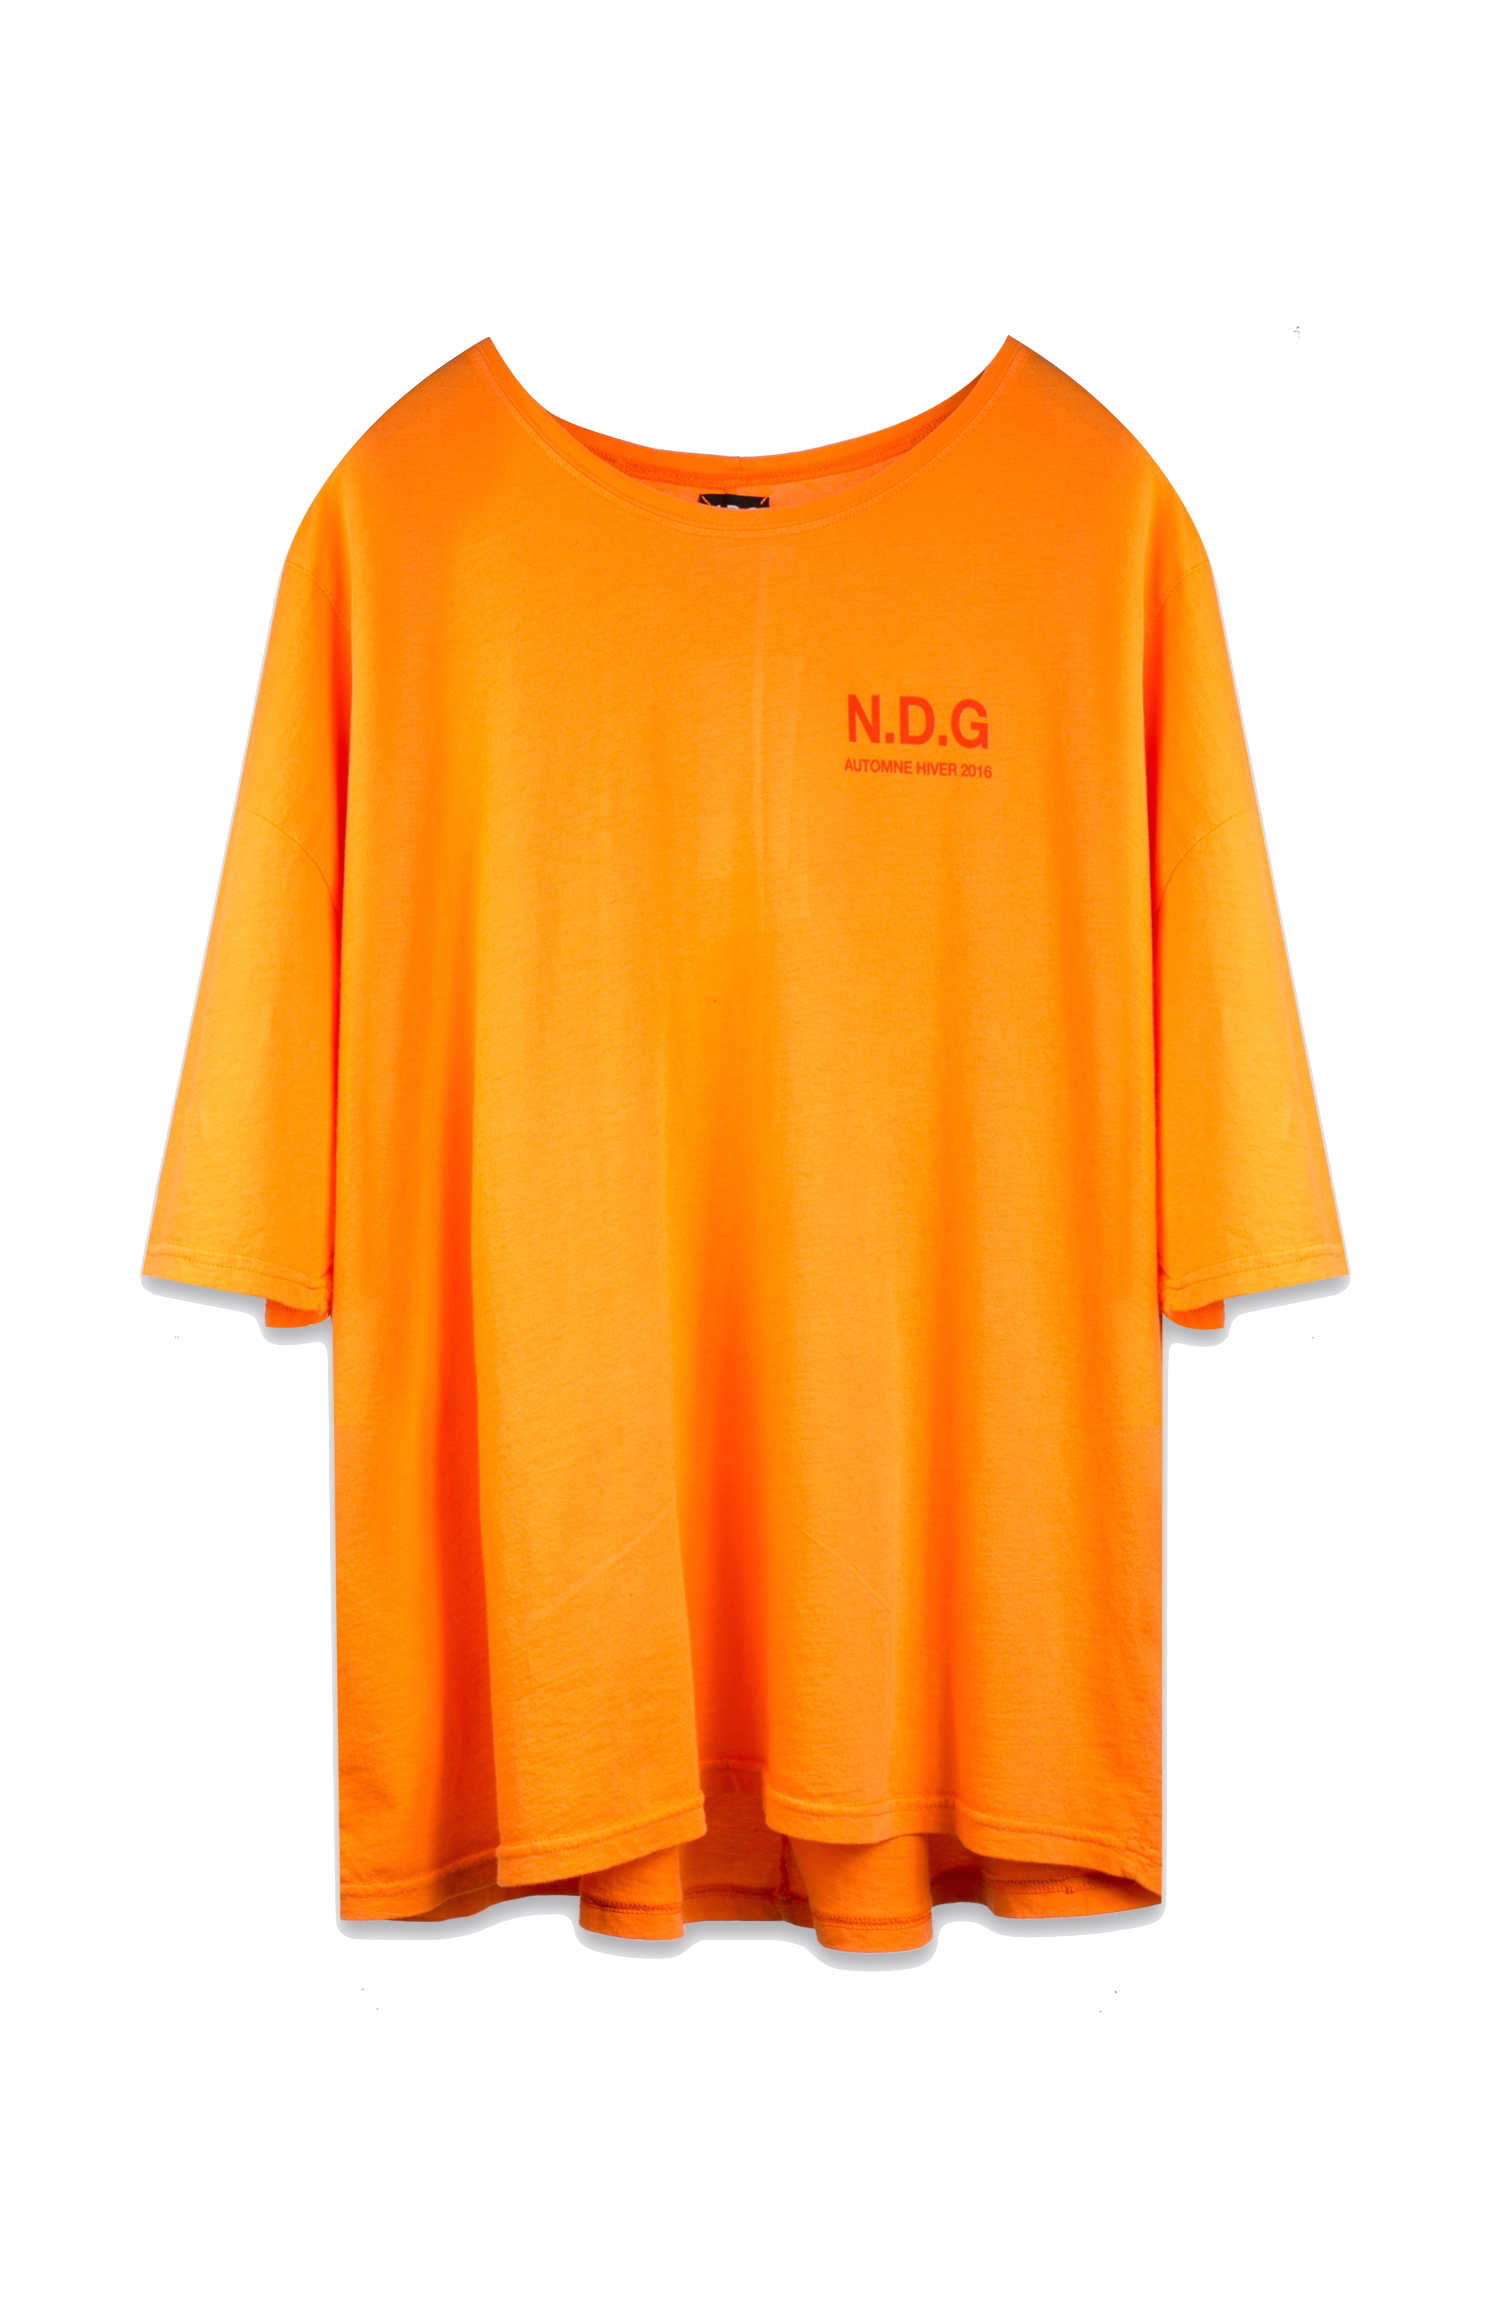 N.D.G. orange shirt